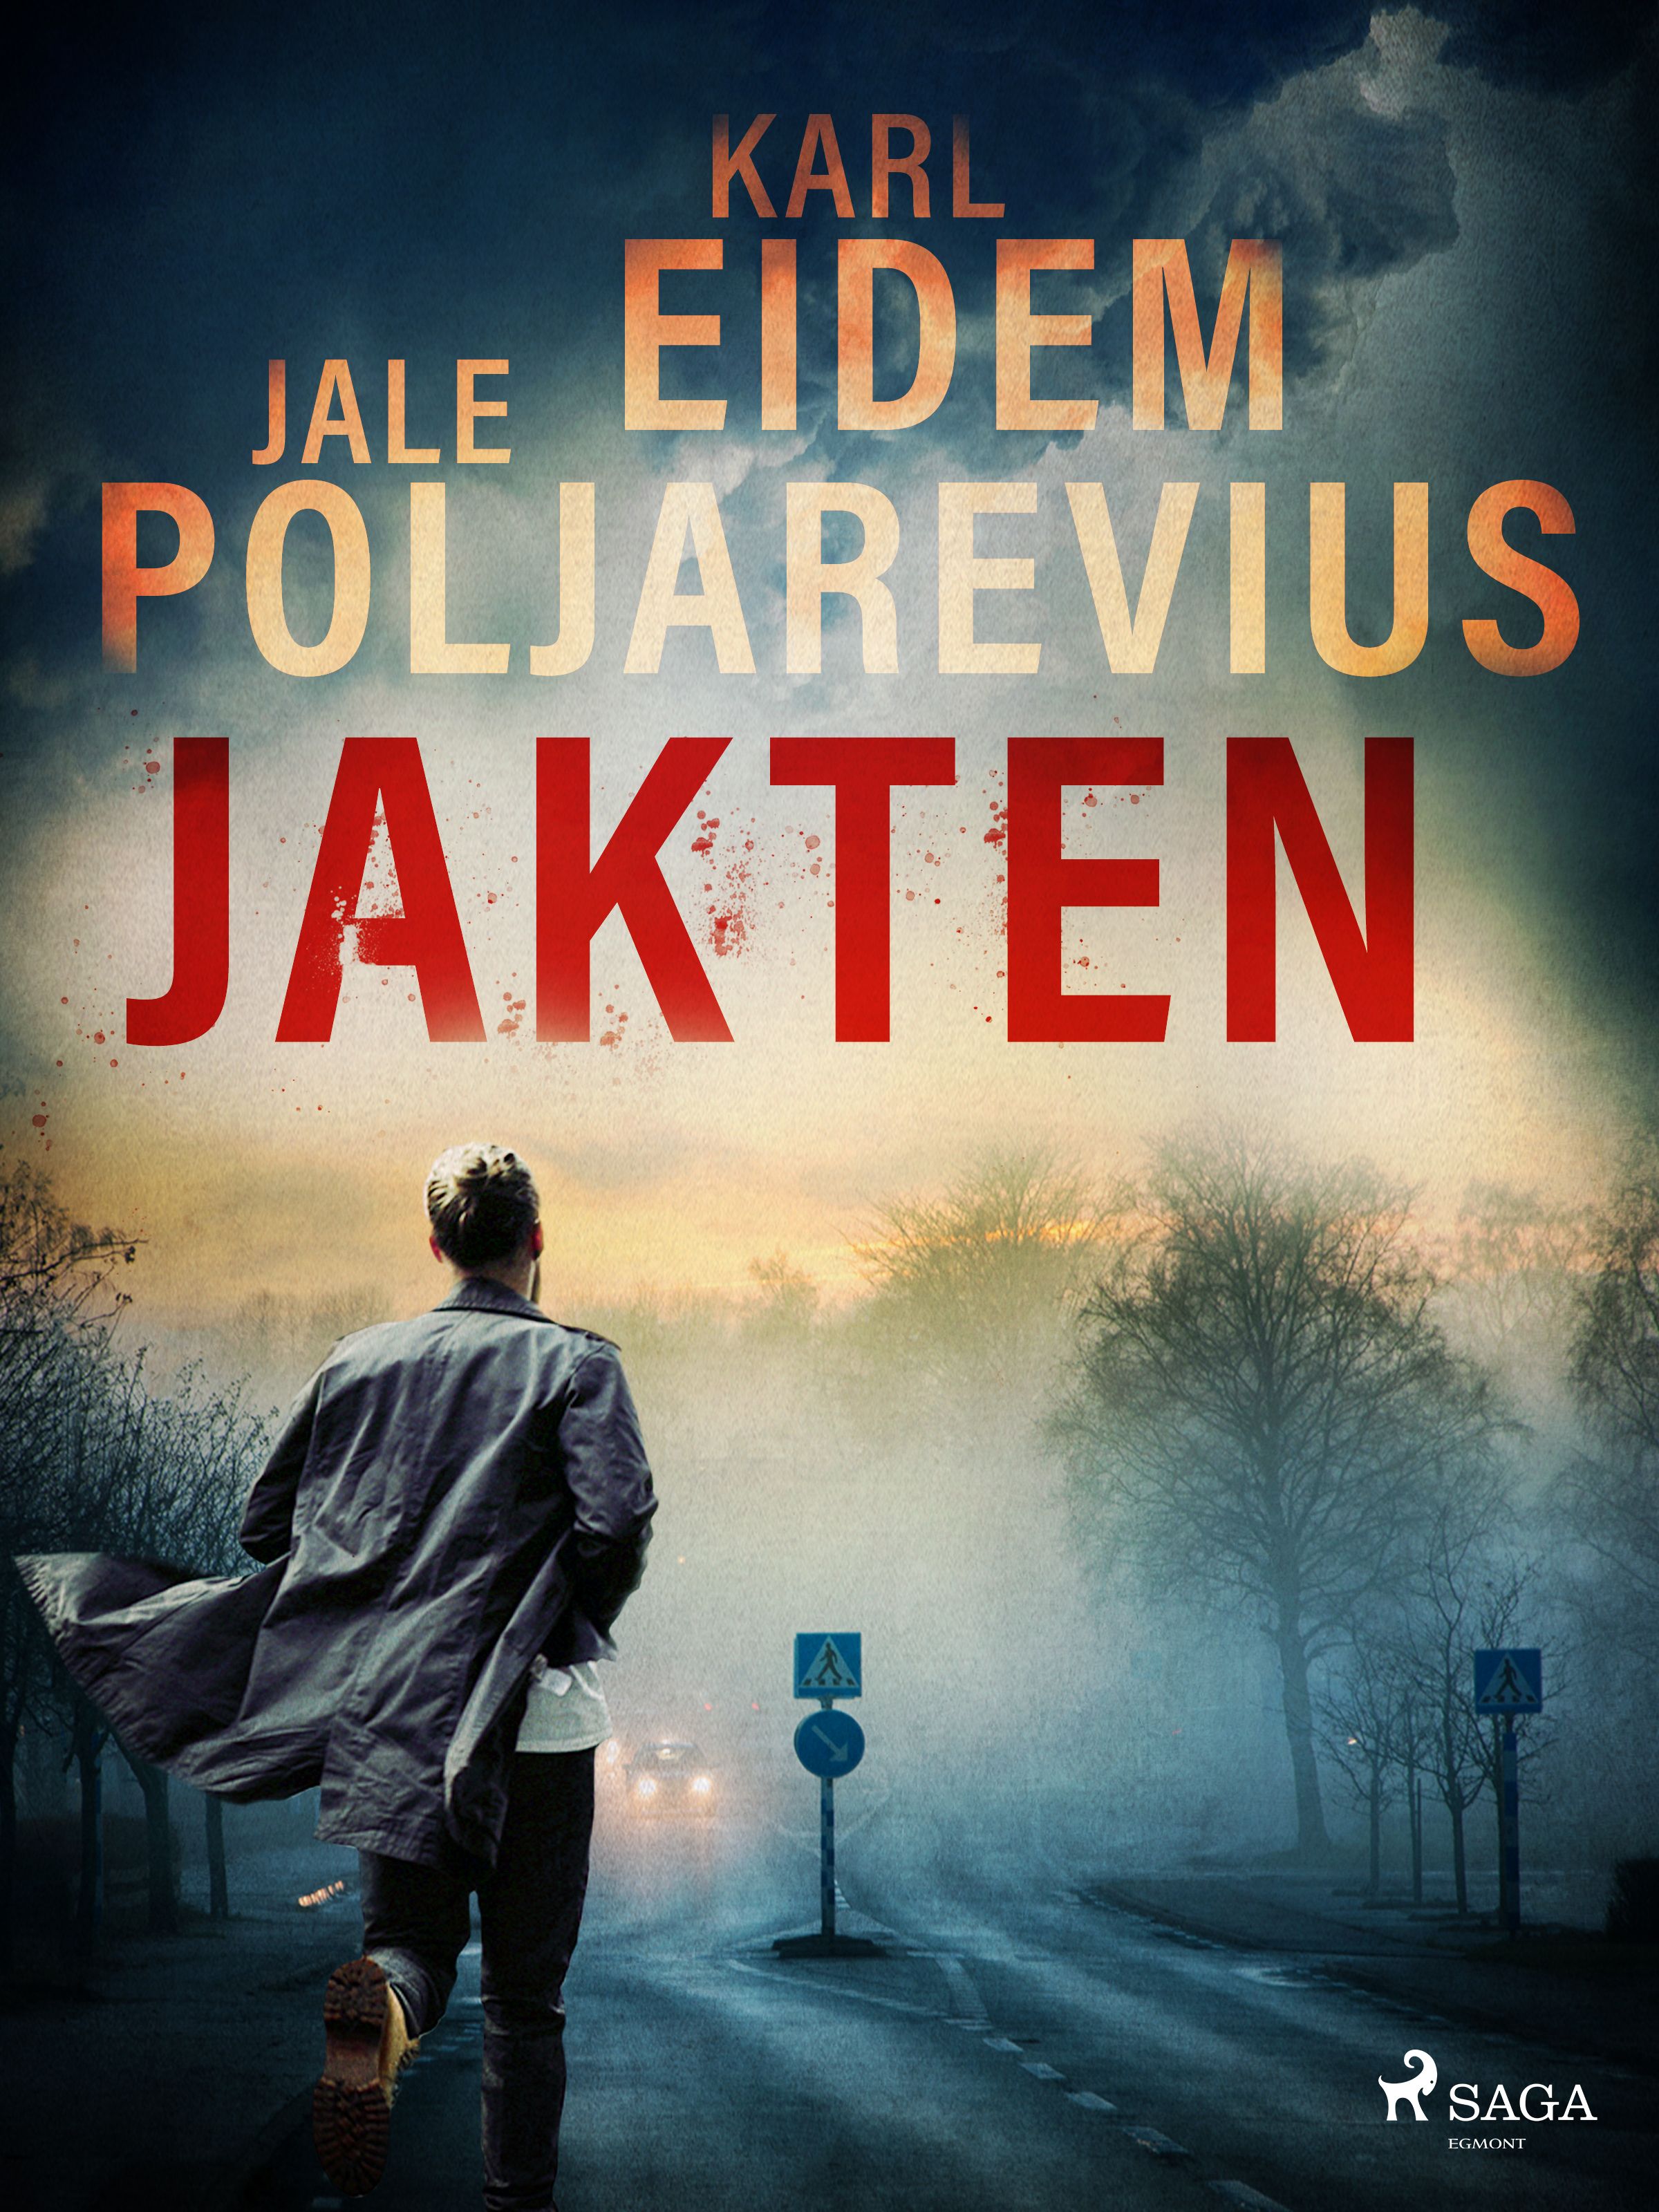 Jakten, eBook by Karl Eidem, Jale Poljarevius